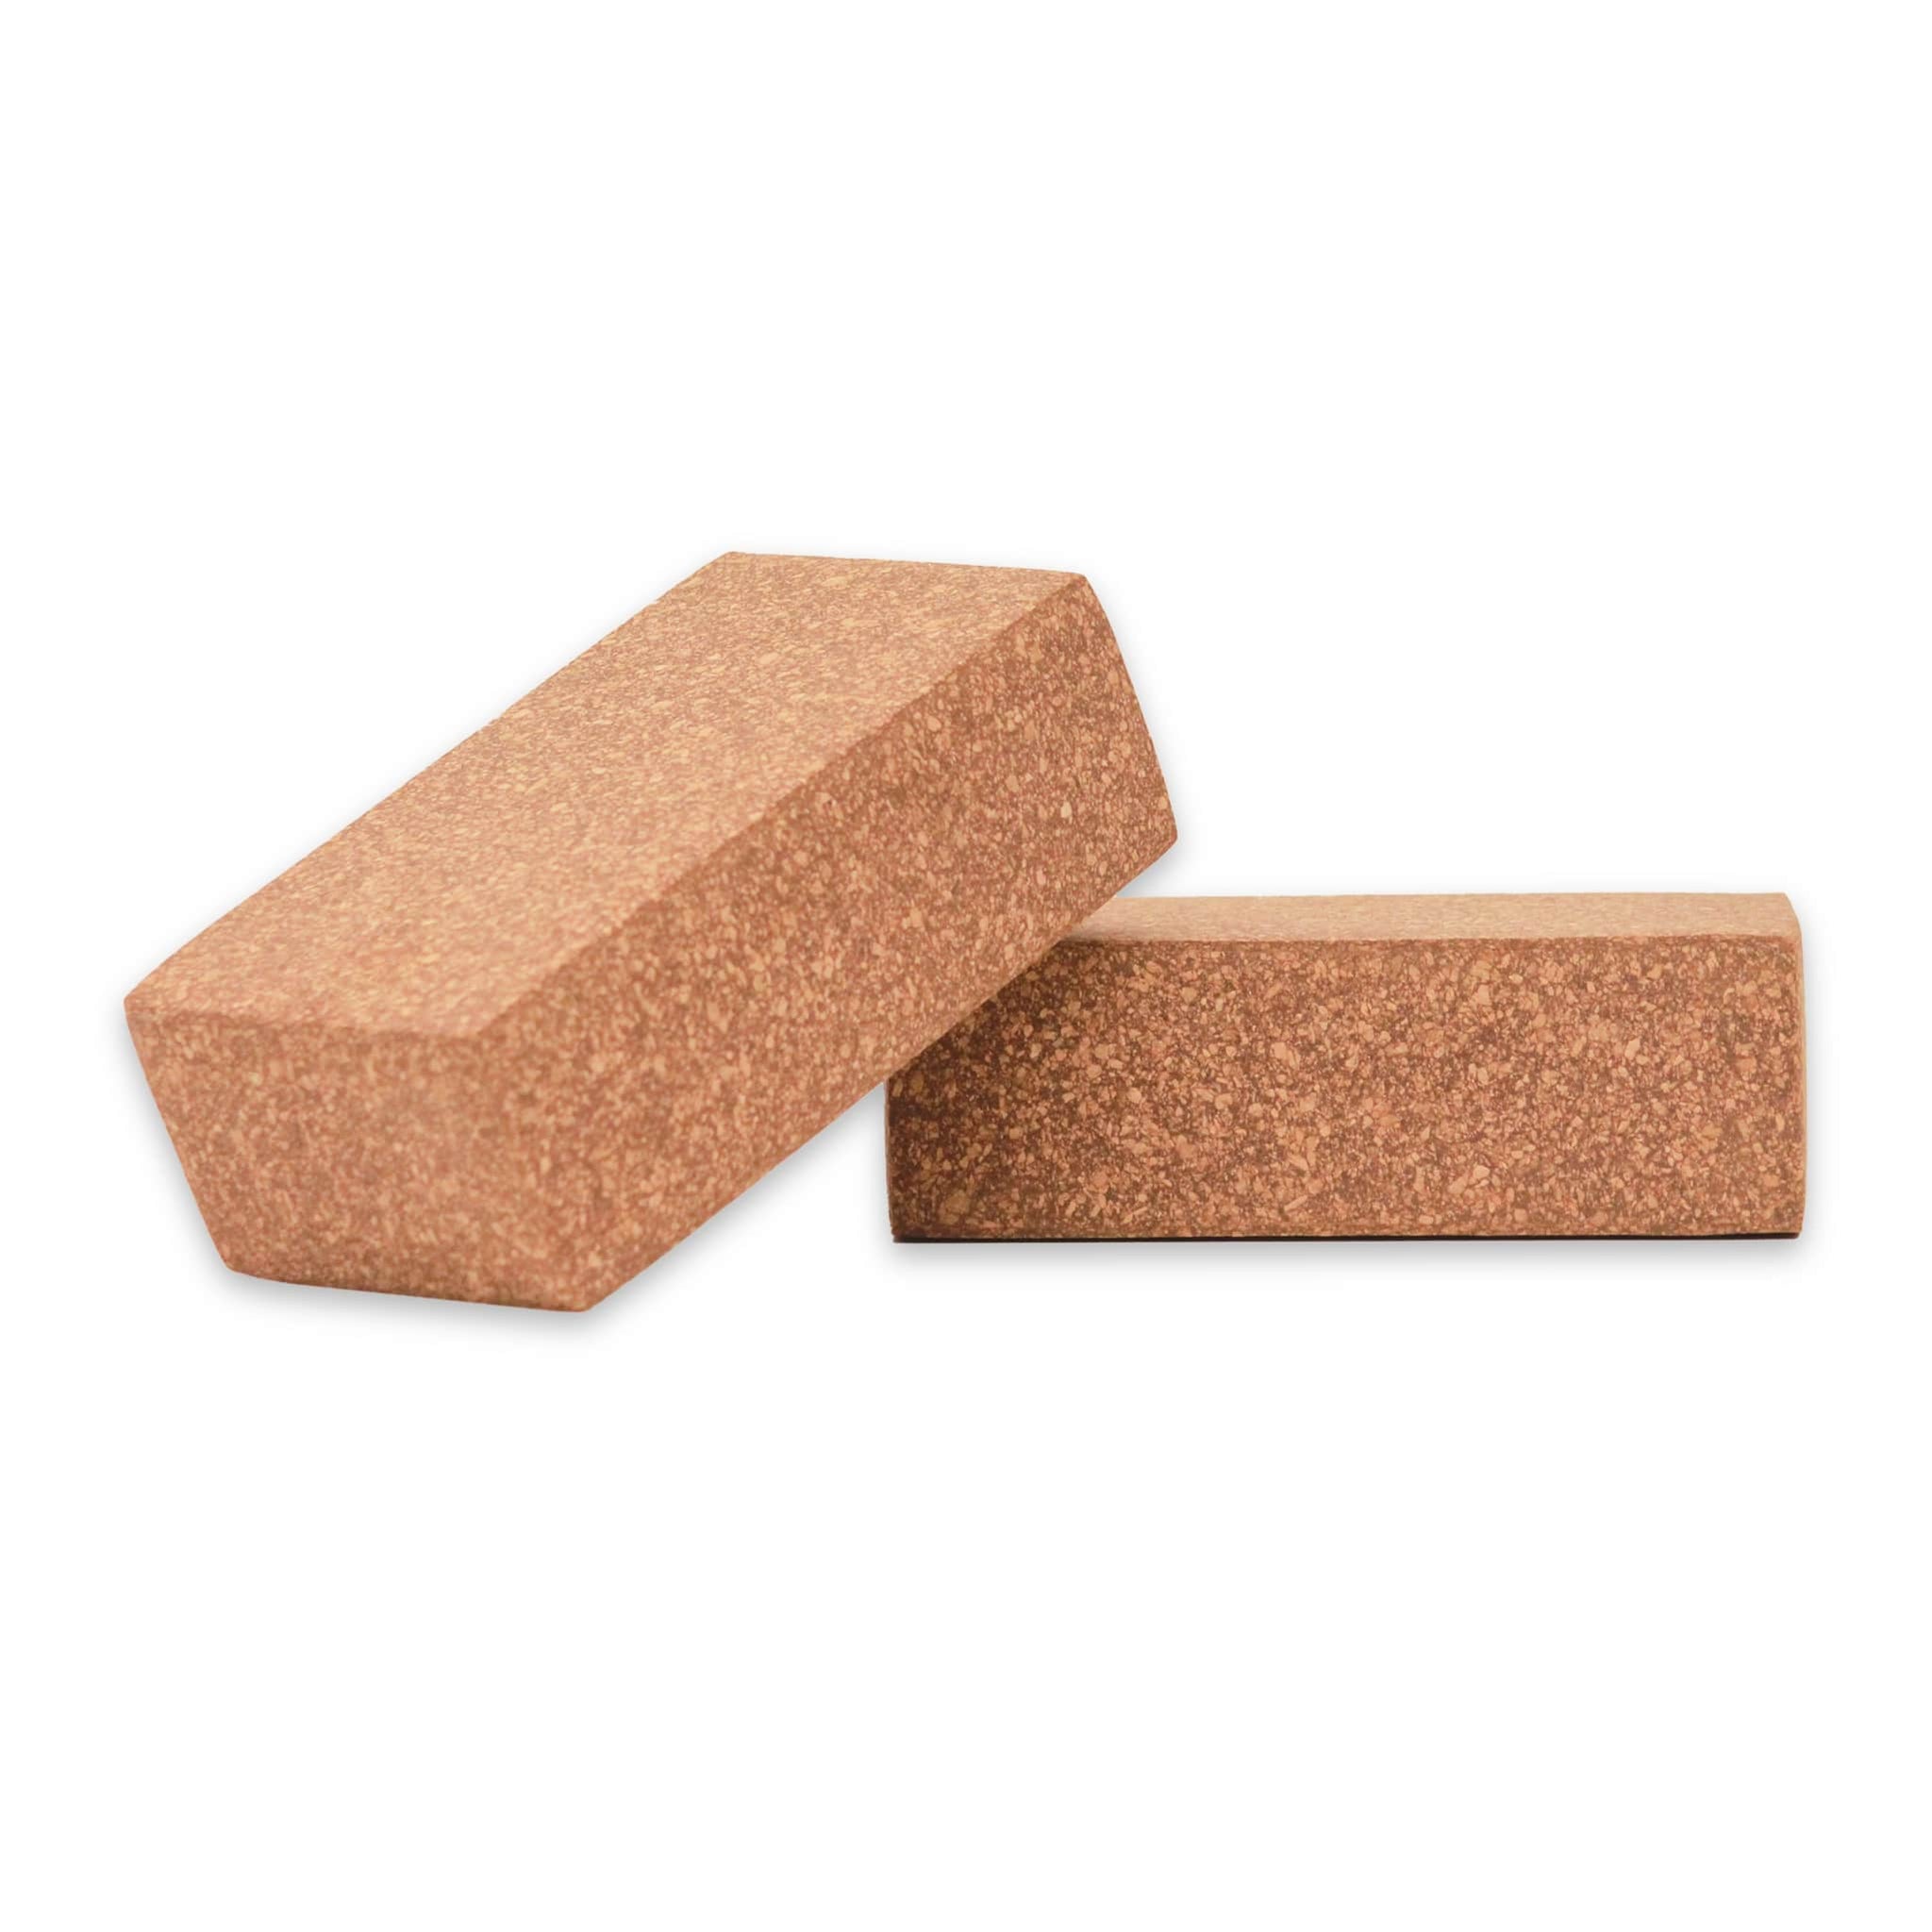 Yoga Bricks - Buy Eco-Friendly Sthairya Cork Yoga Bricks (Set of 2) Online